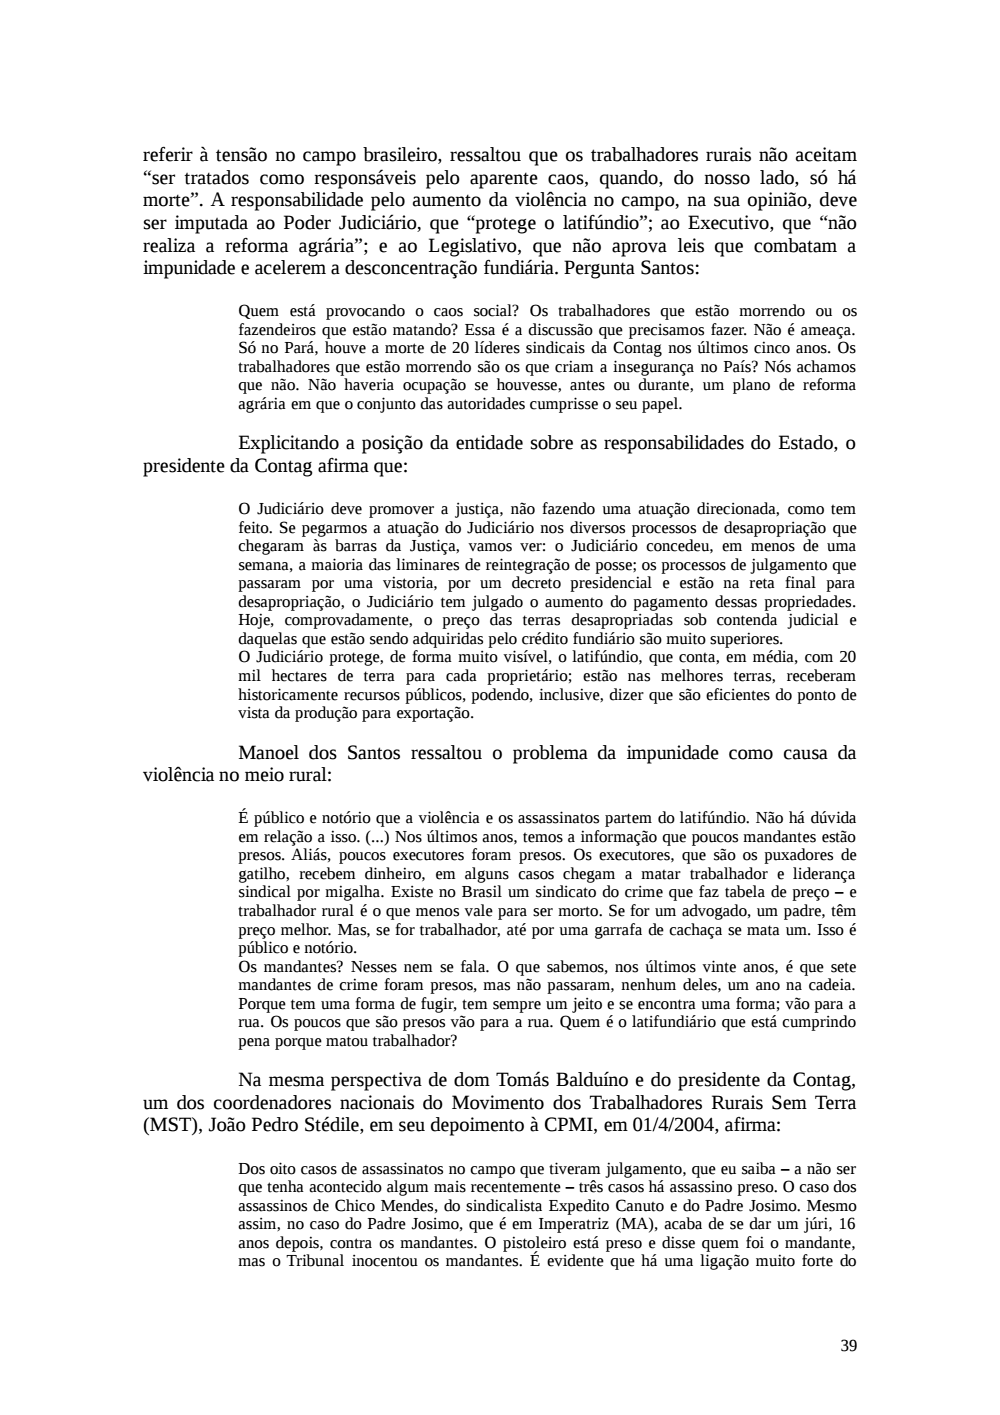 Page 39 from Relatório final da comissão